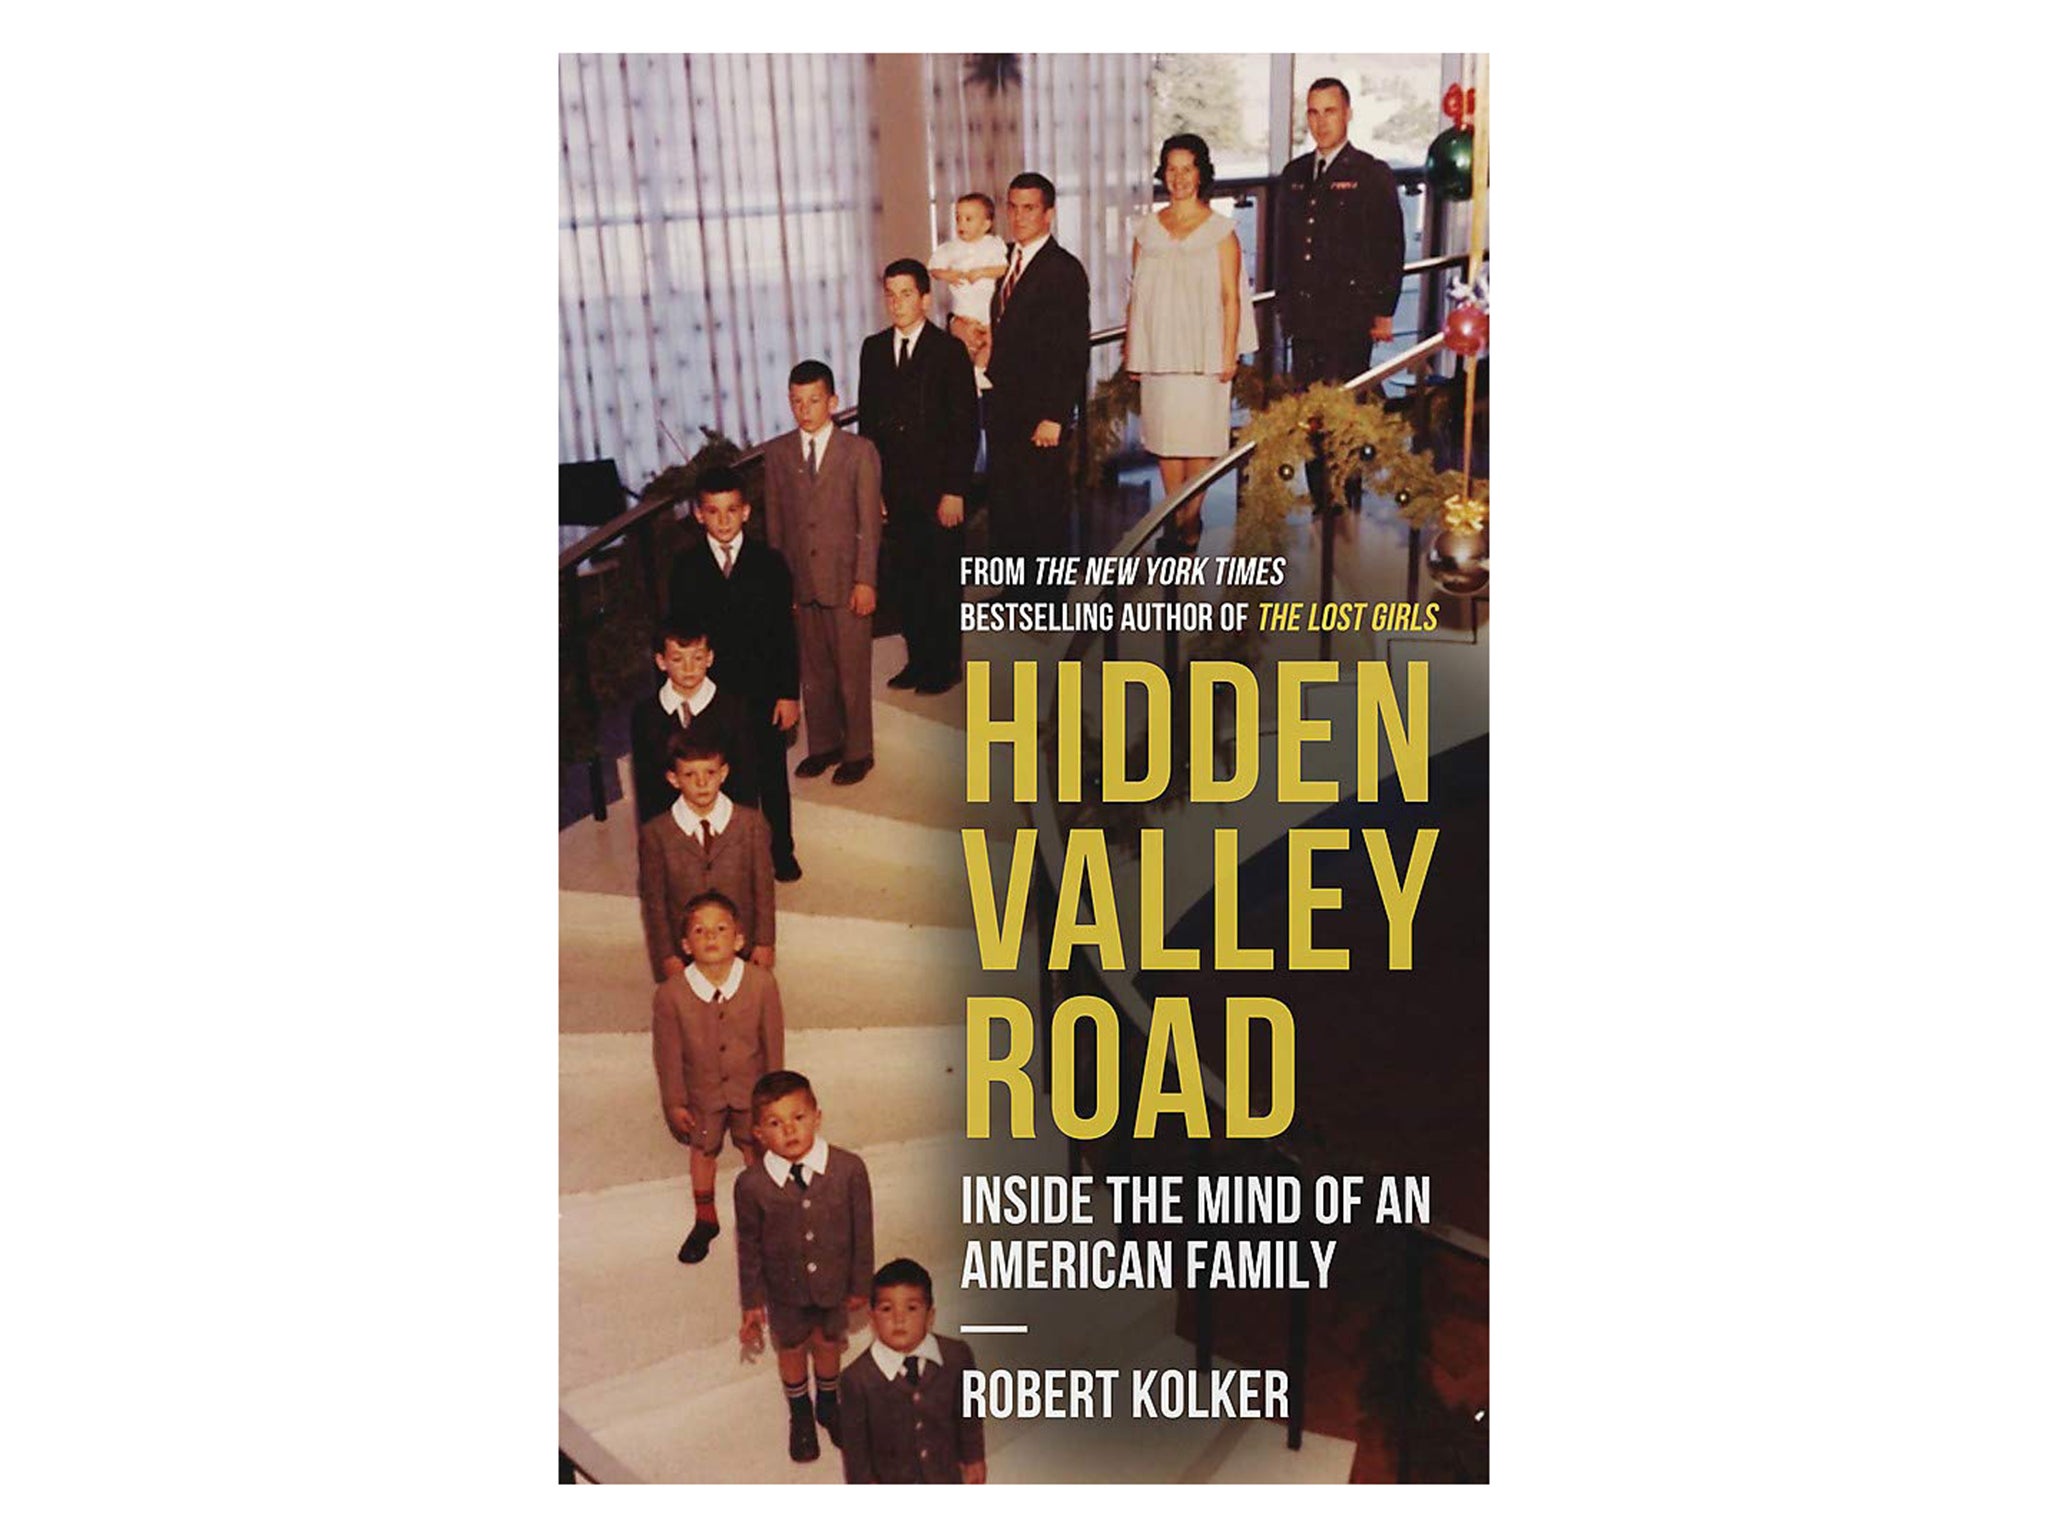 hidden-valley-road-indybest-obama-books.jpg